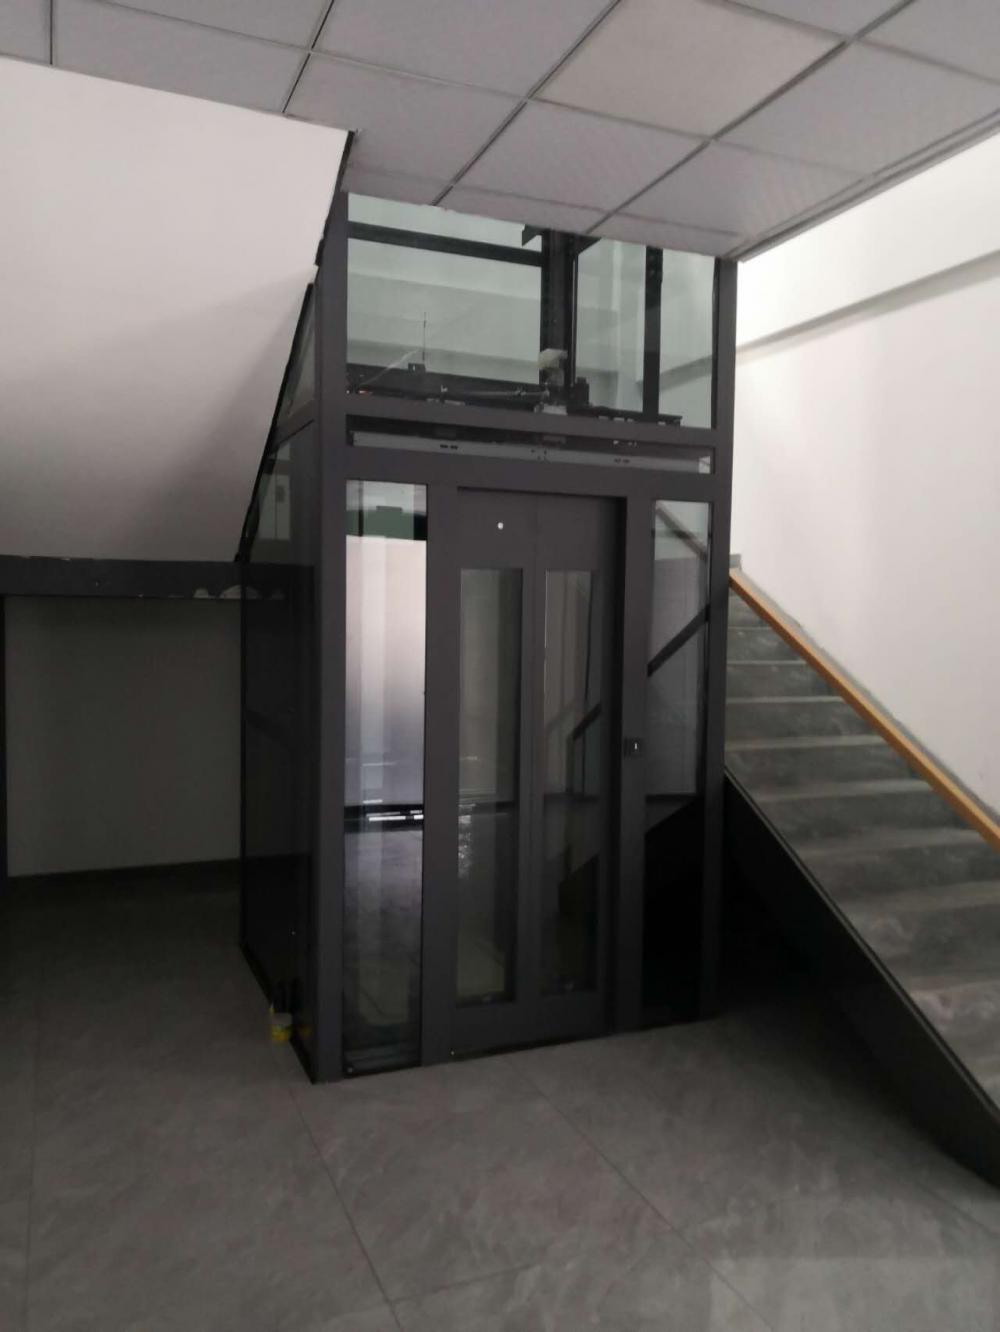 Mejor precio 1-3 Floors Lift para el hogar vertical interior